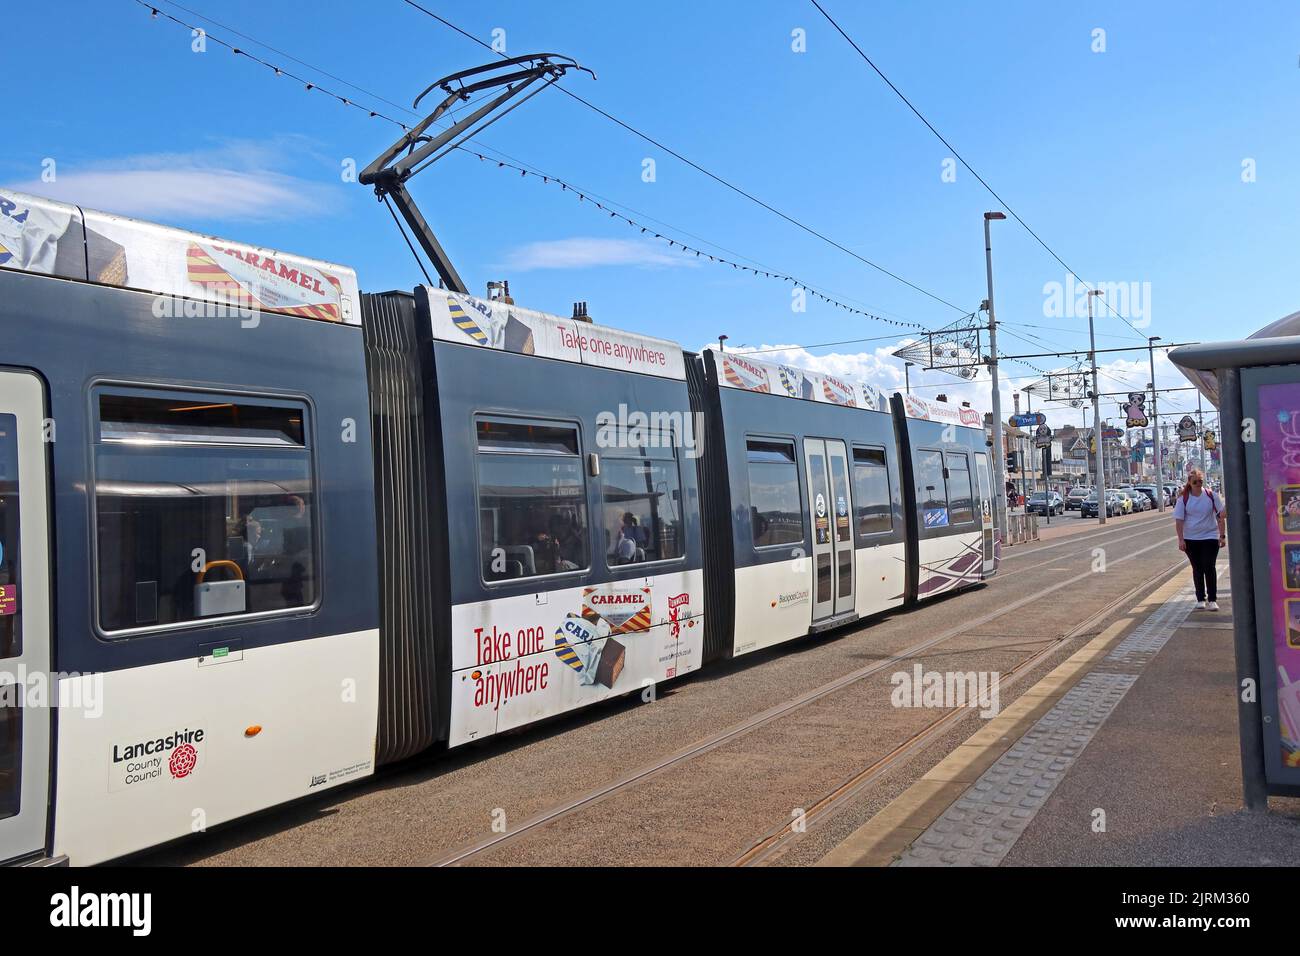 Blackpool Tramways, Bombardier tram 006, avec publicité Tunnocks sur la promenade de Blackpool, Lancashire, Angleterre, Royaume-Uni Banque D'Images